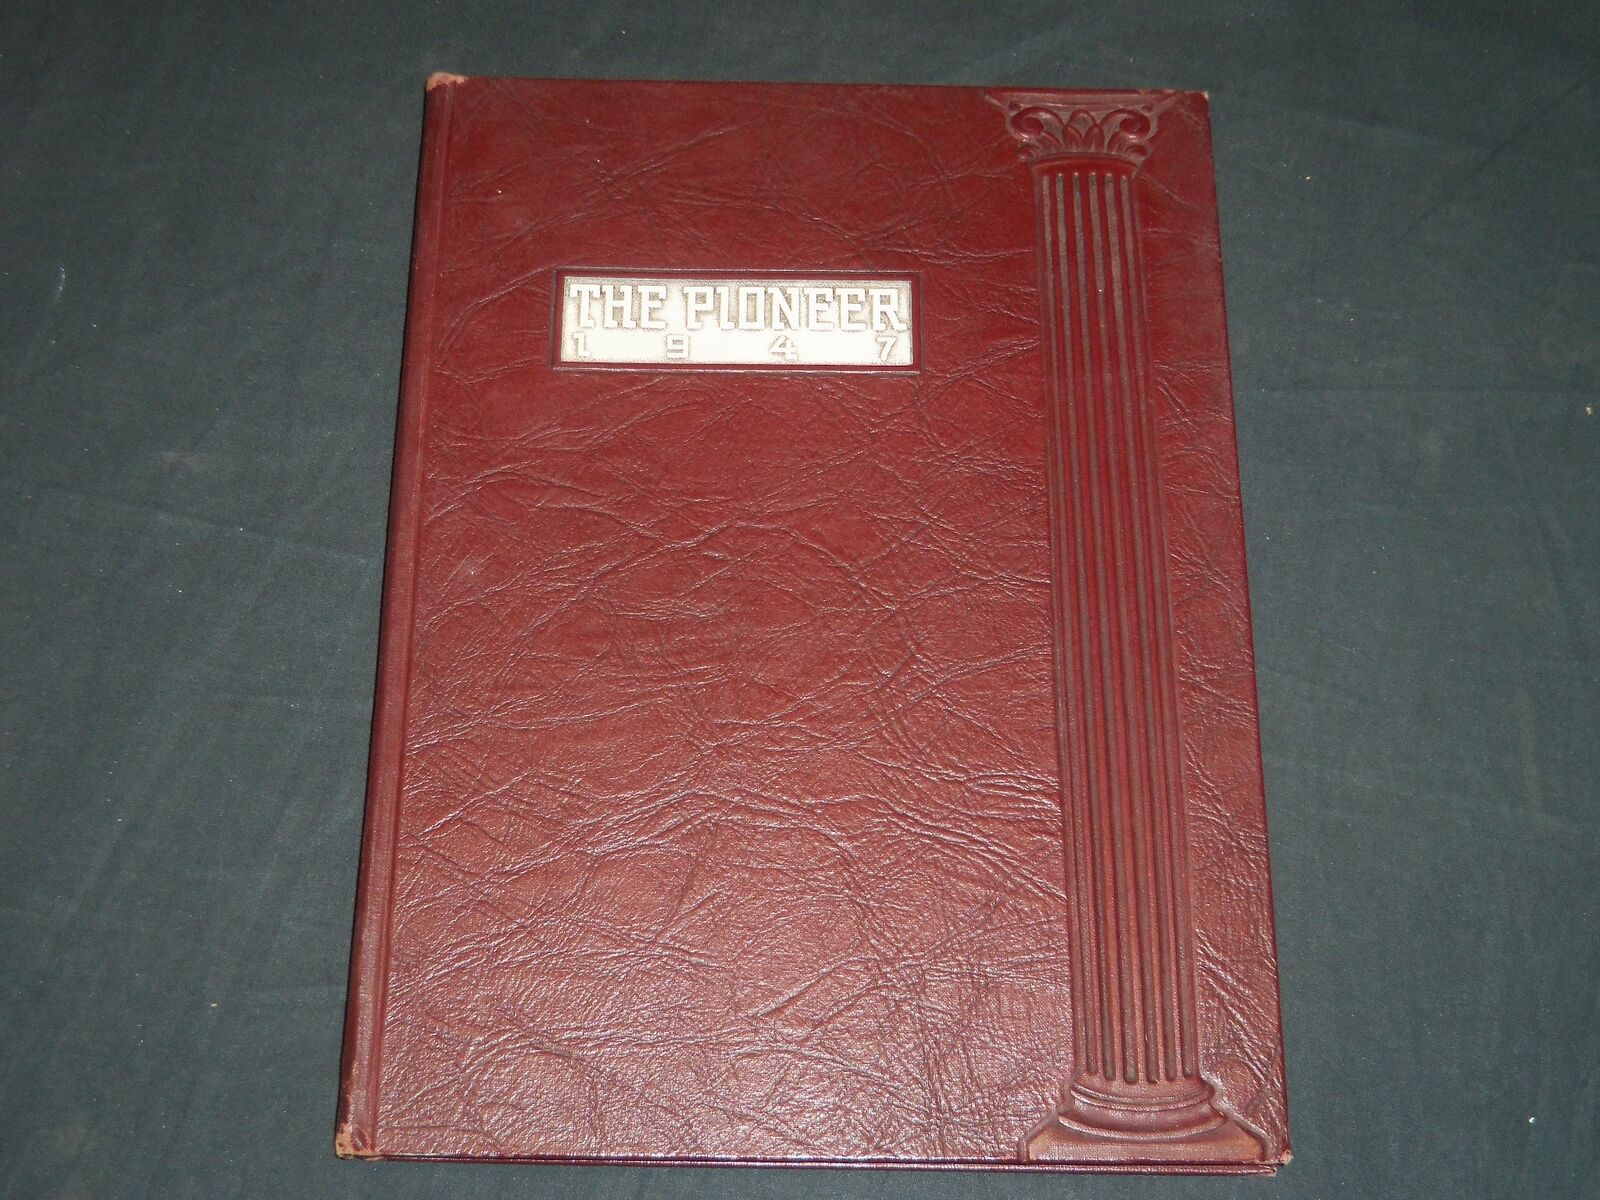 1947 THE PIONEER STROUDSBURG HIGH SCHOOL YEARBOOK - PENNSYLVANIA - YB 1931